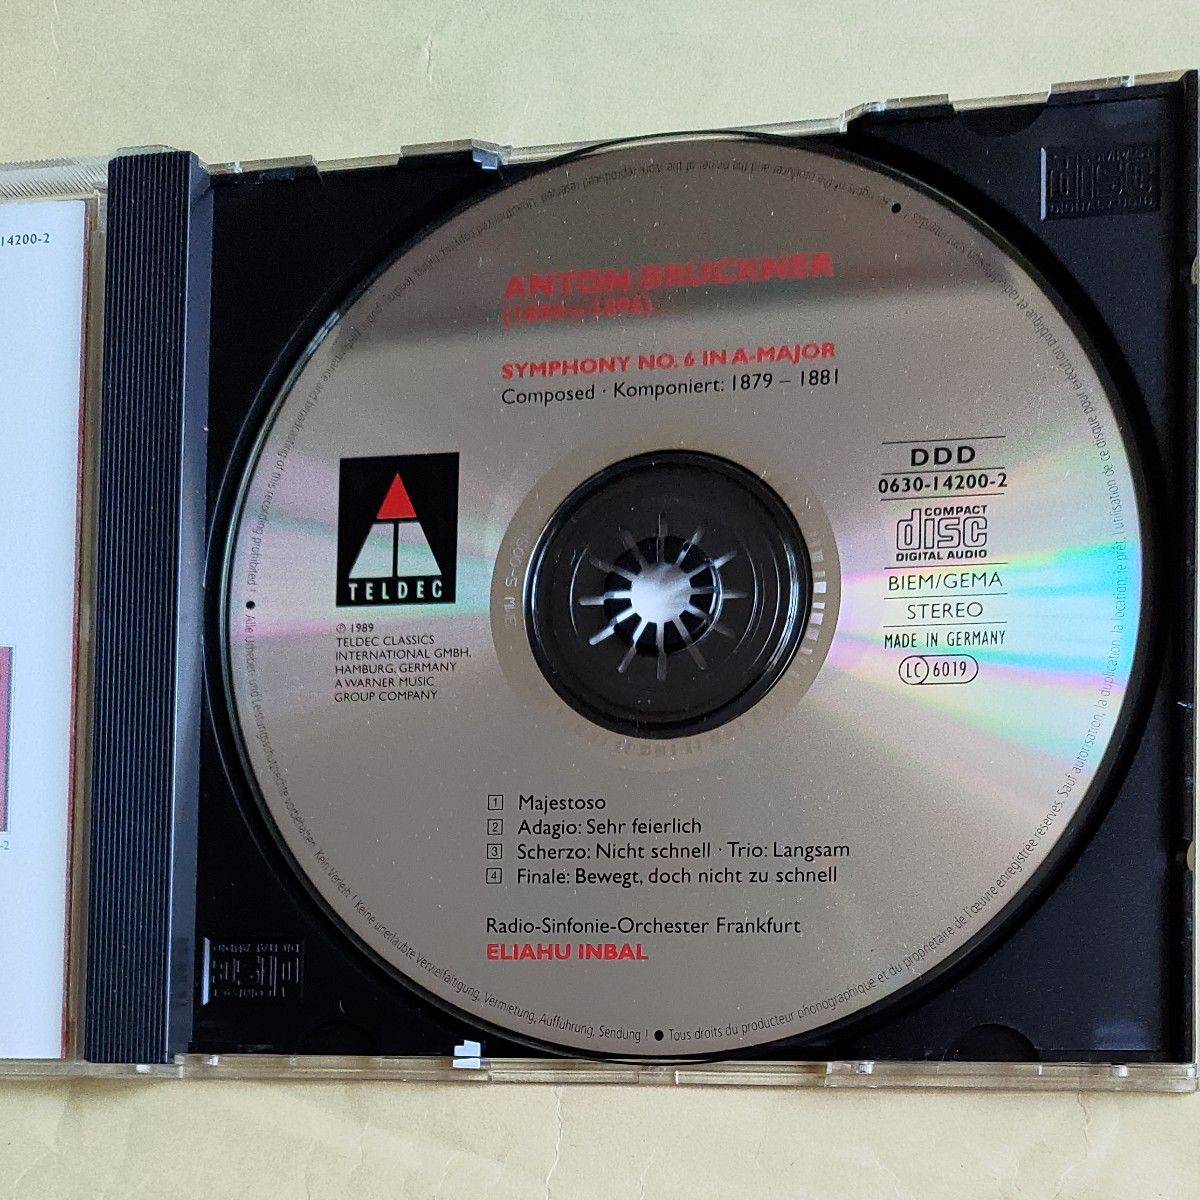 CD2枚）インバル＆フランクフルト放送響のブルックナー、交響曲6番、7番（中古）